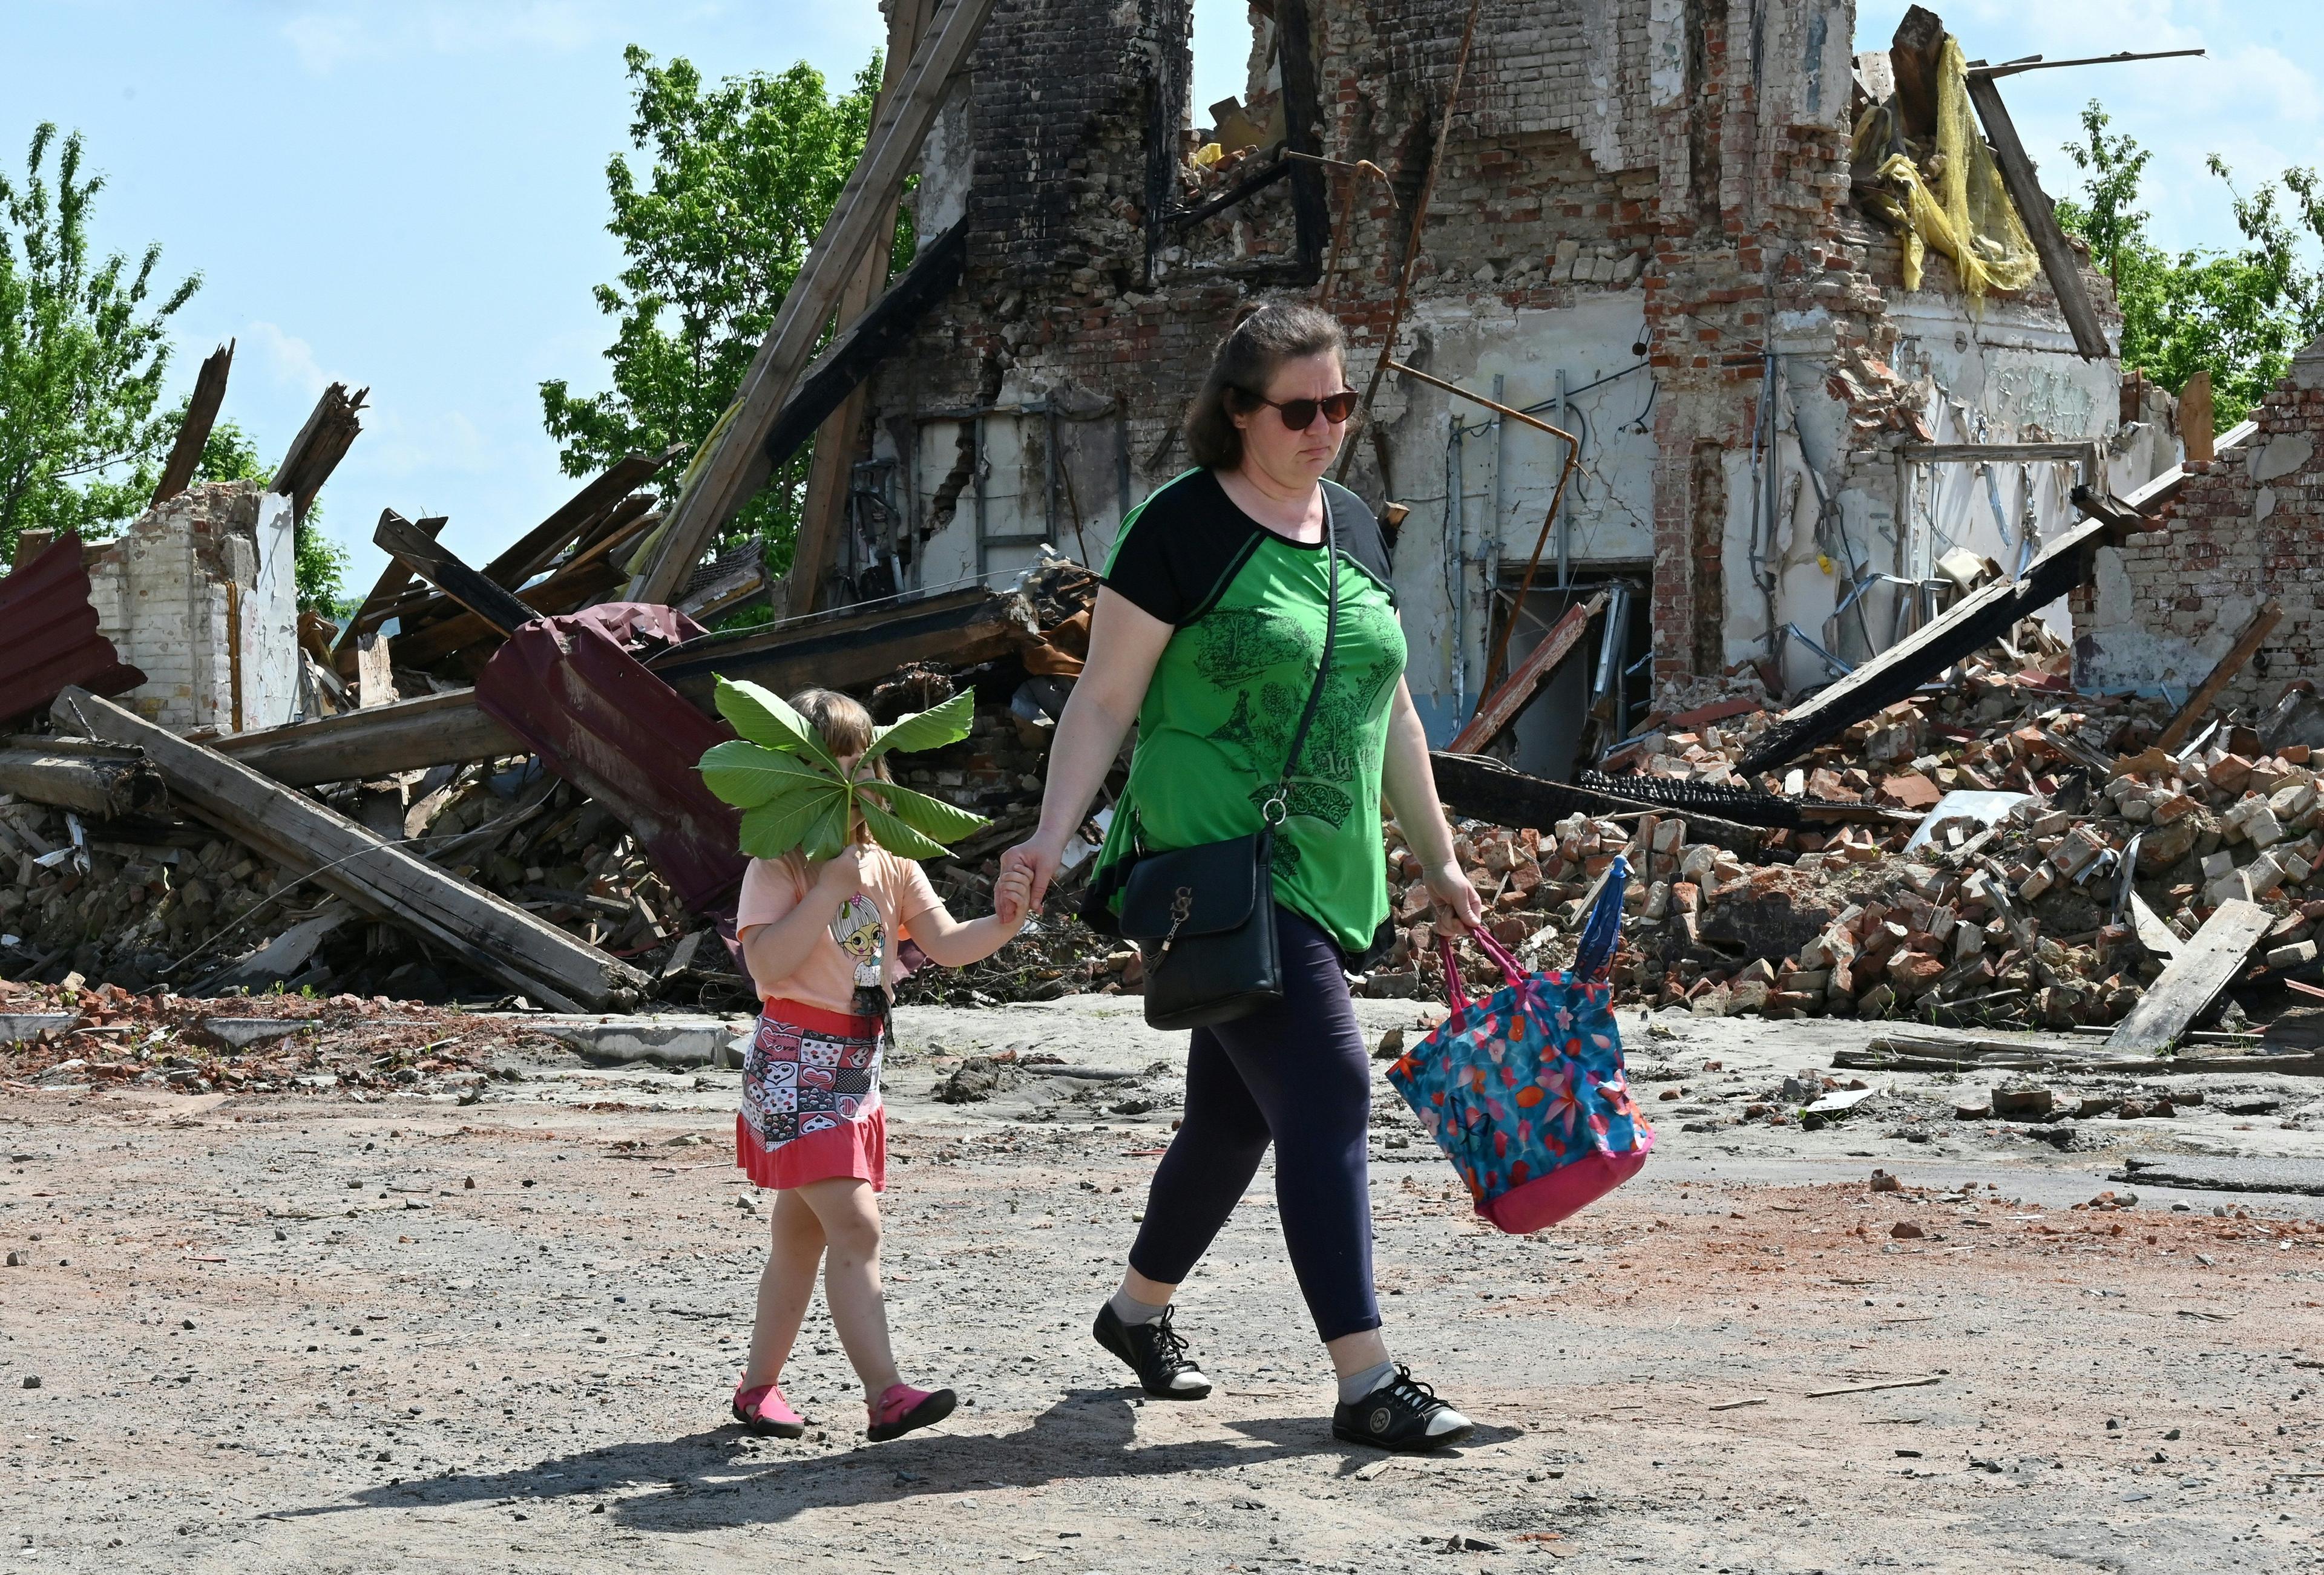 Kobieta z dzieckiem idzie przez zburzone miasto. Dziecko trzyma zielony liść